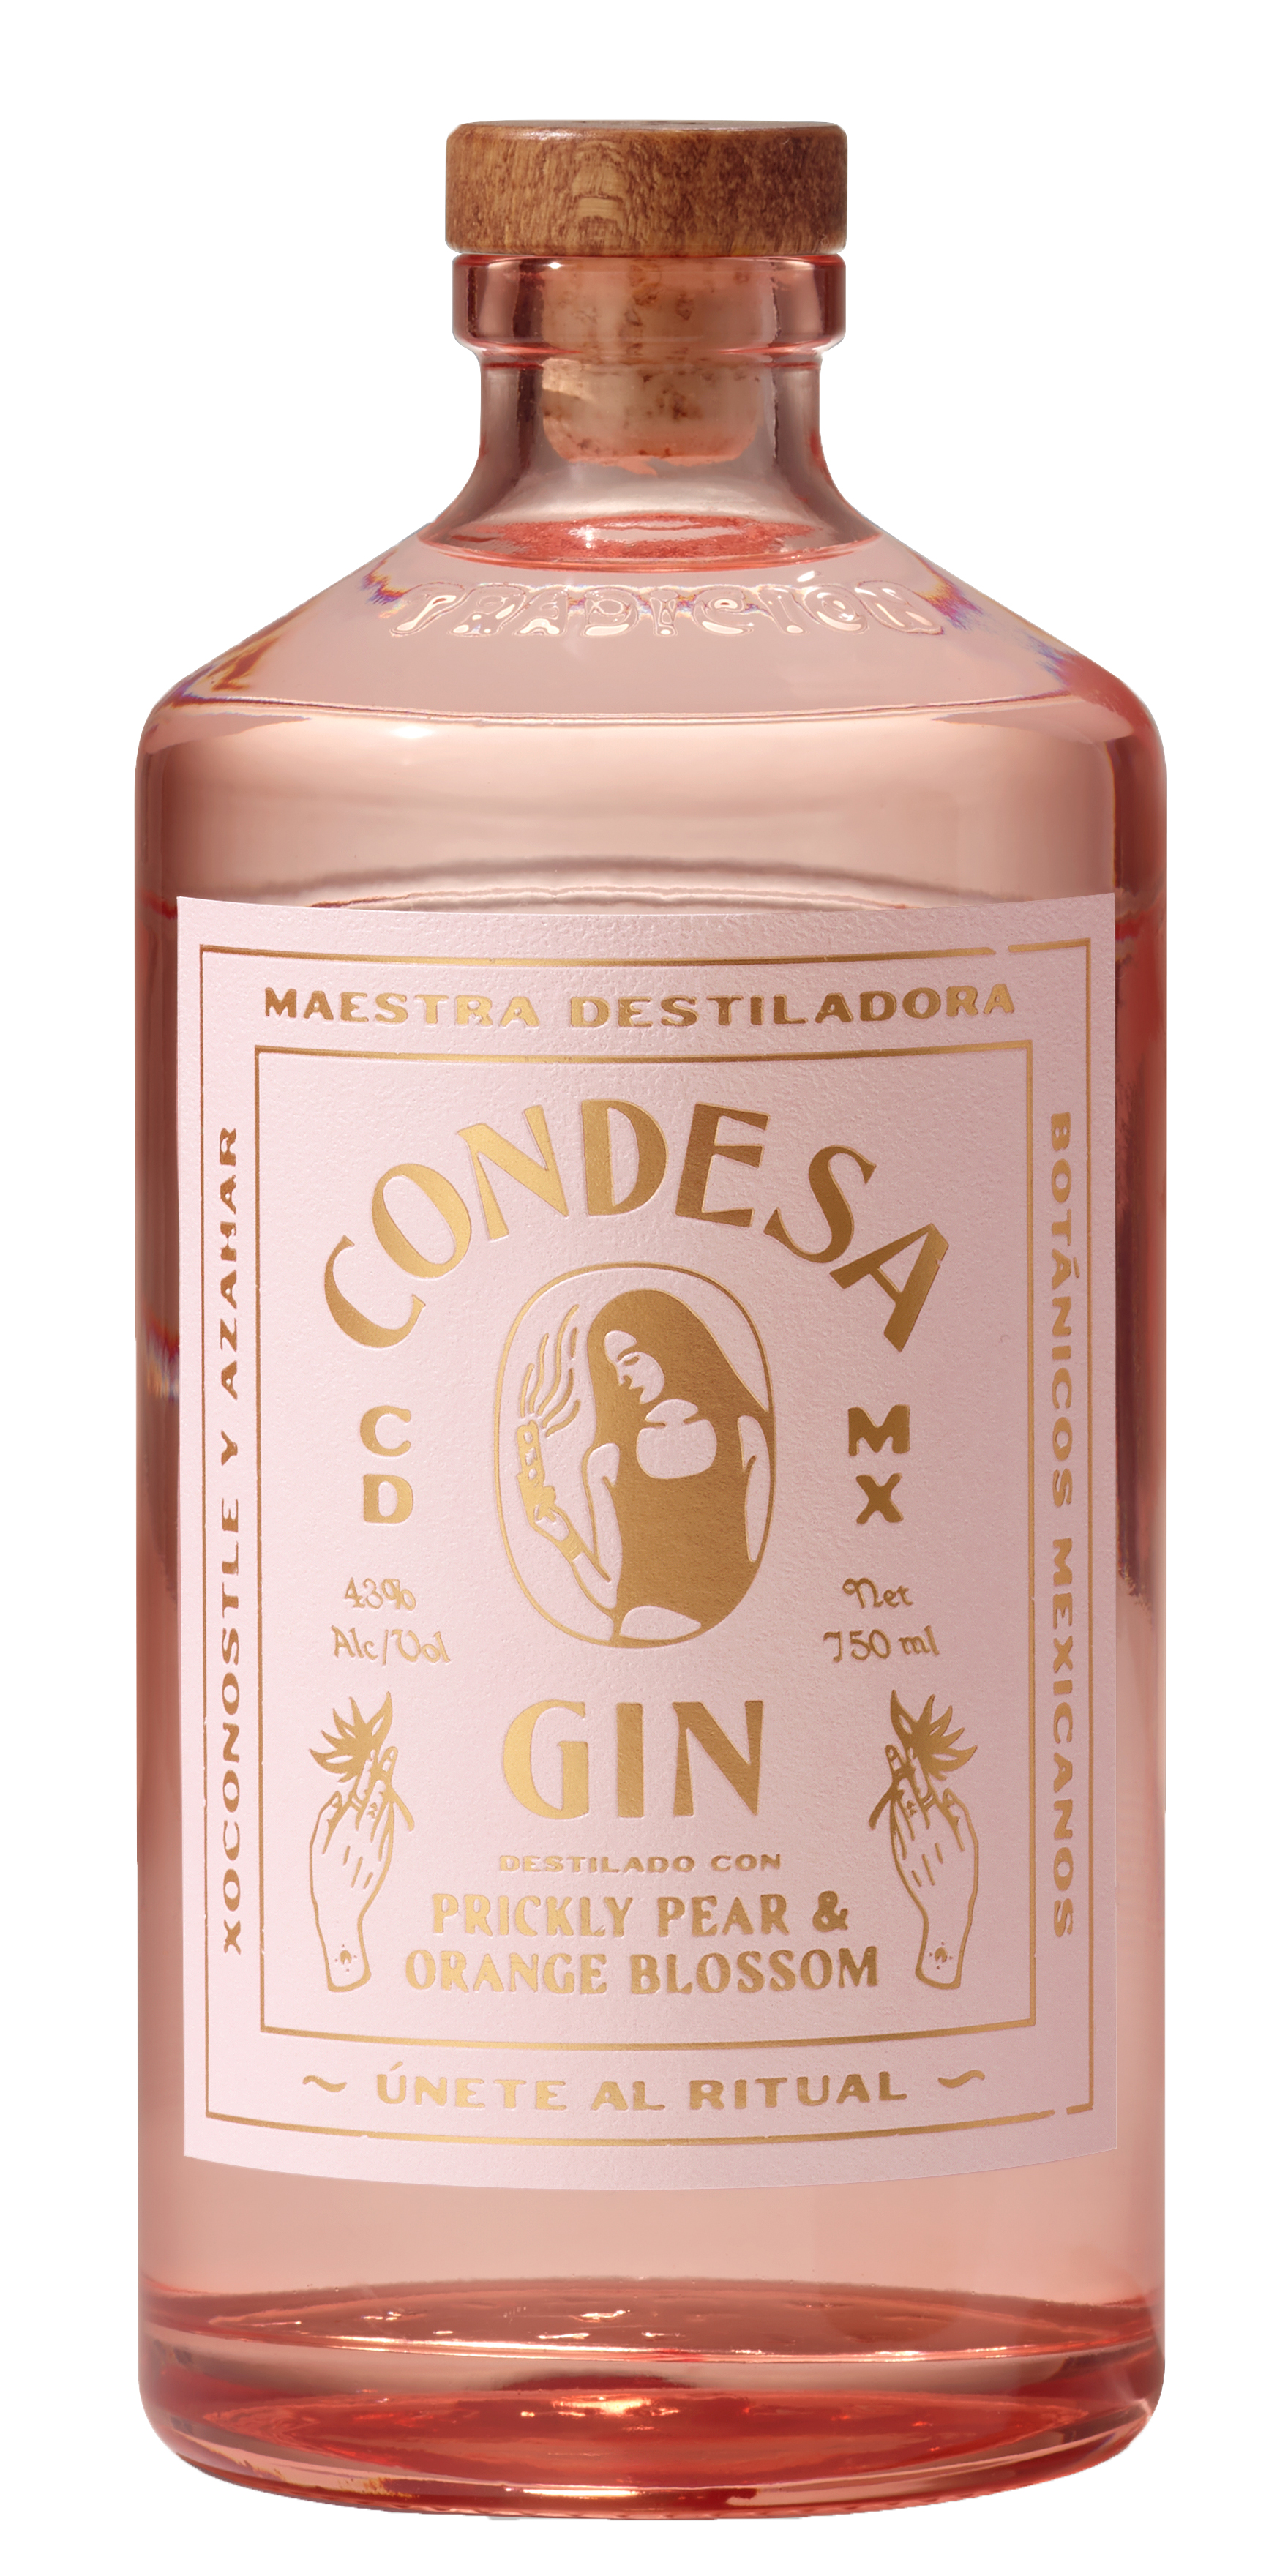 Condesa Prickly Pear & Orange Blossom Gin                                                           